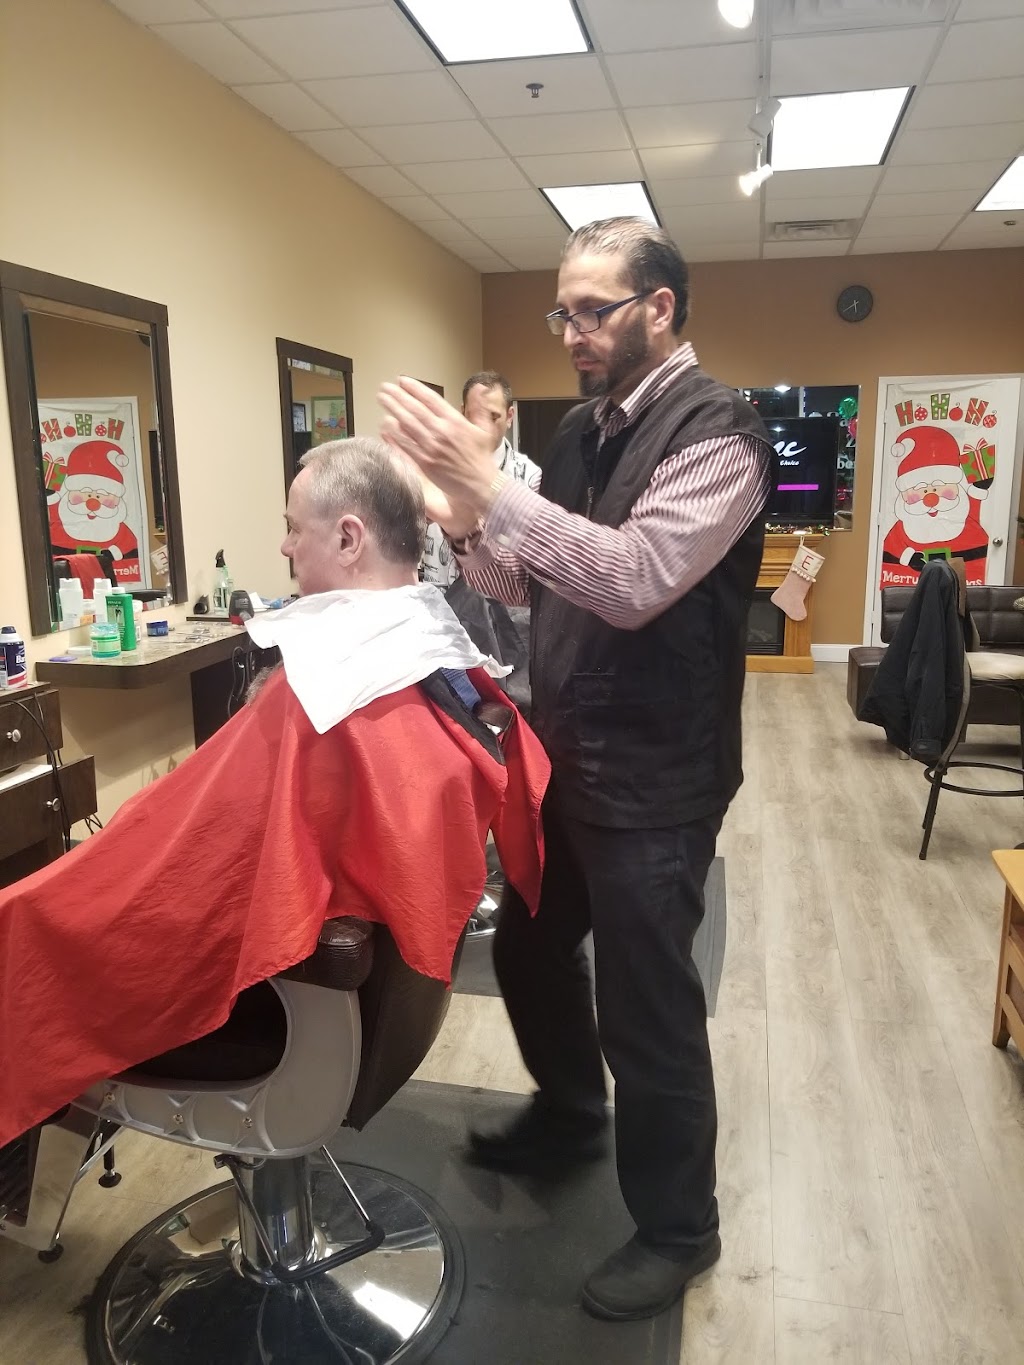 Tappan zee barbershop | 580 NY-303, Blauvelt, NY 10913, USA | Phone: (845) 848-2090